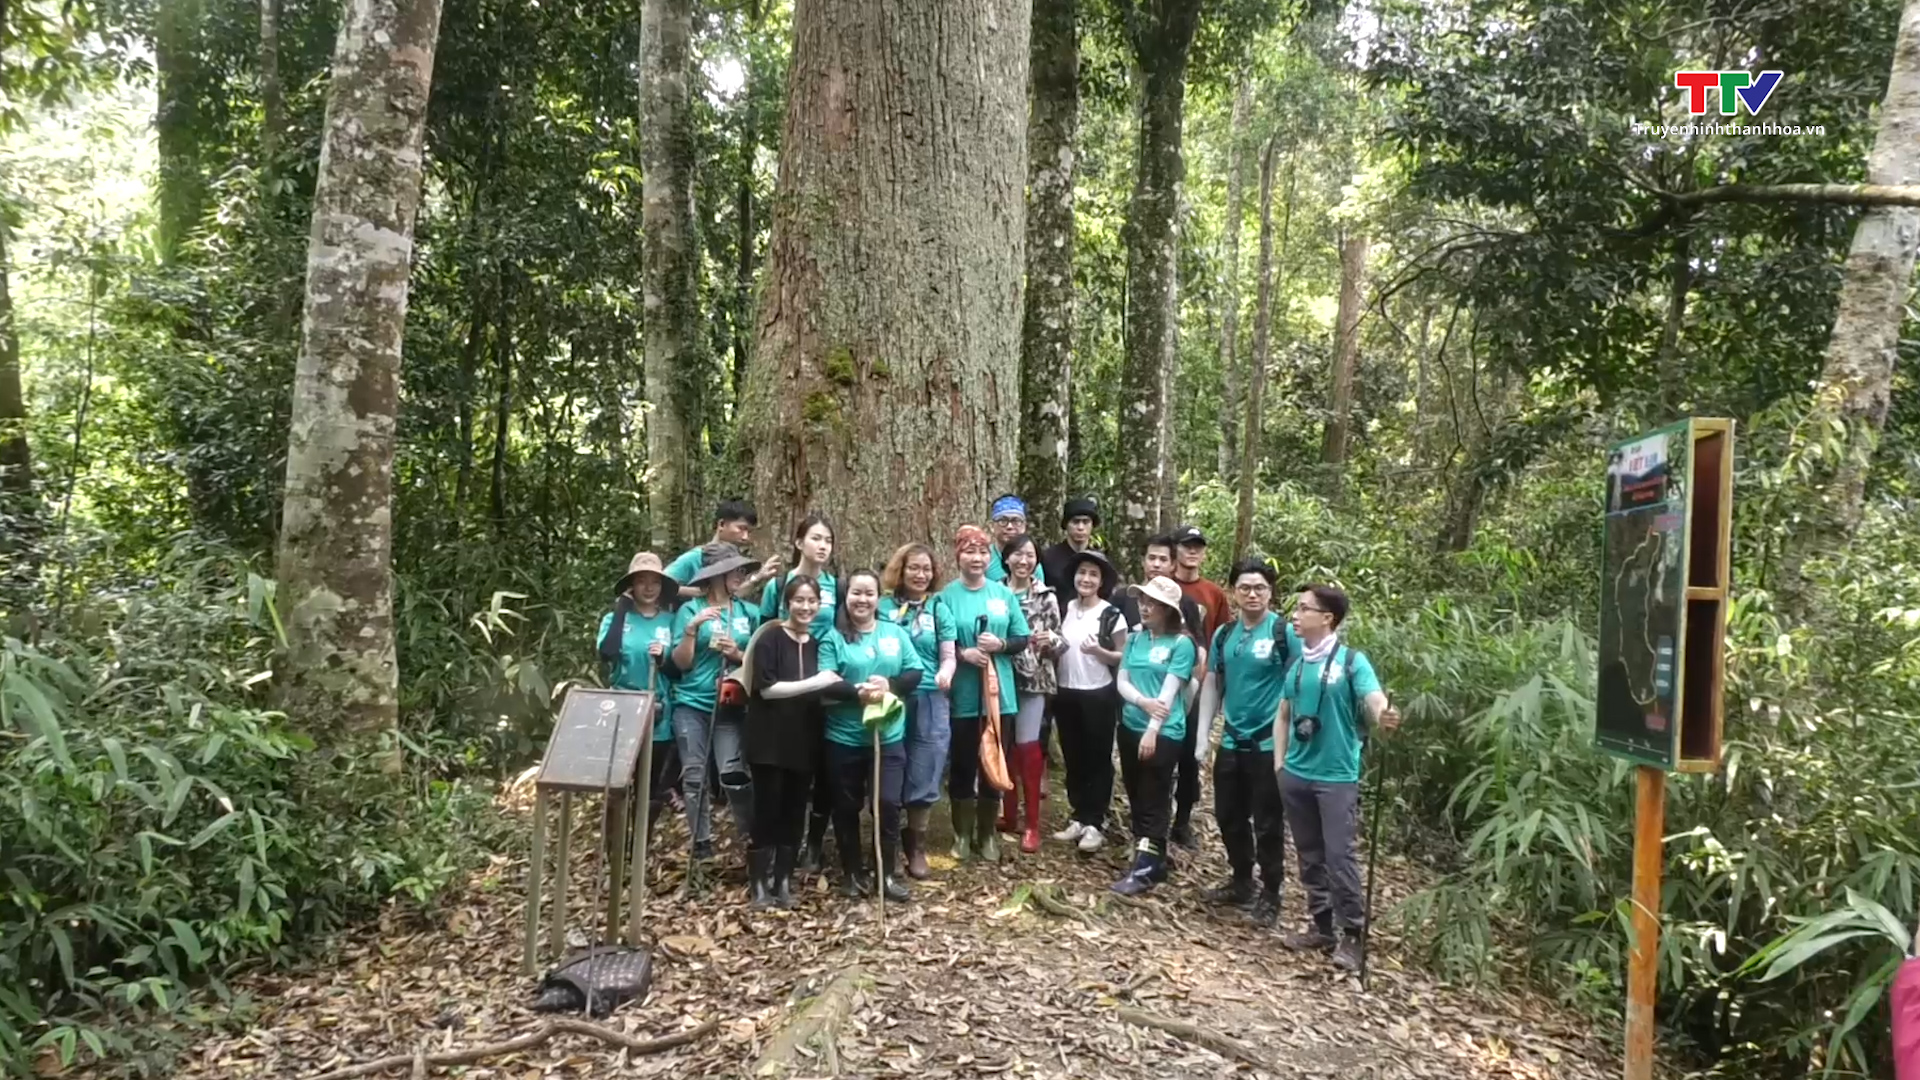 Hoa hậu Hoàn vũ Việt Nam tham gia trồng rừng tại Khu bảo tồn Thiên nhiên Xuân Liên, huyện Thường Xuân - Ảnh 8.